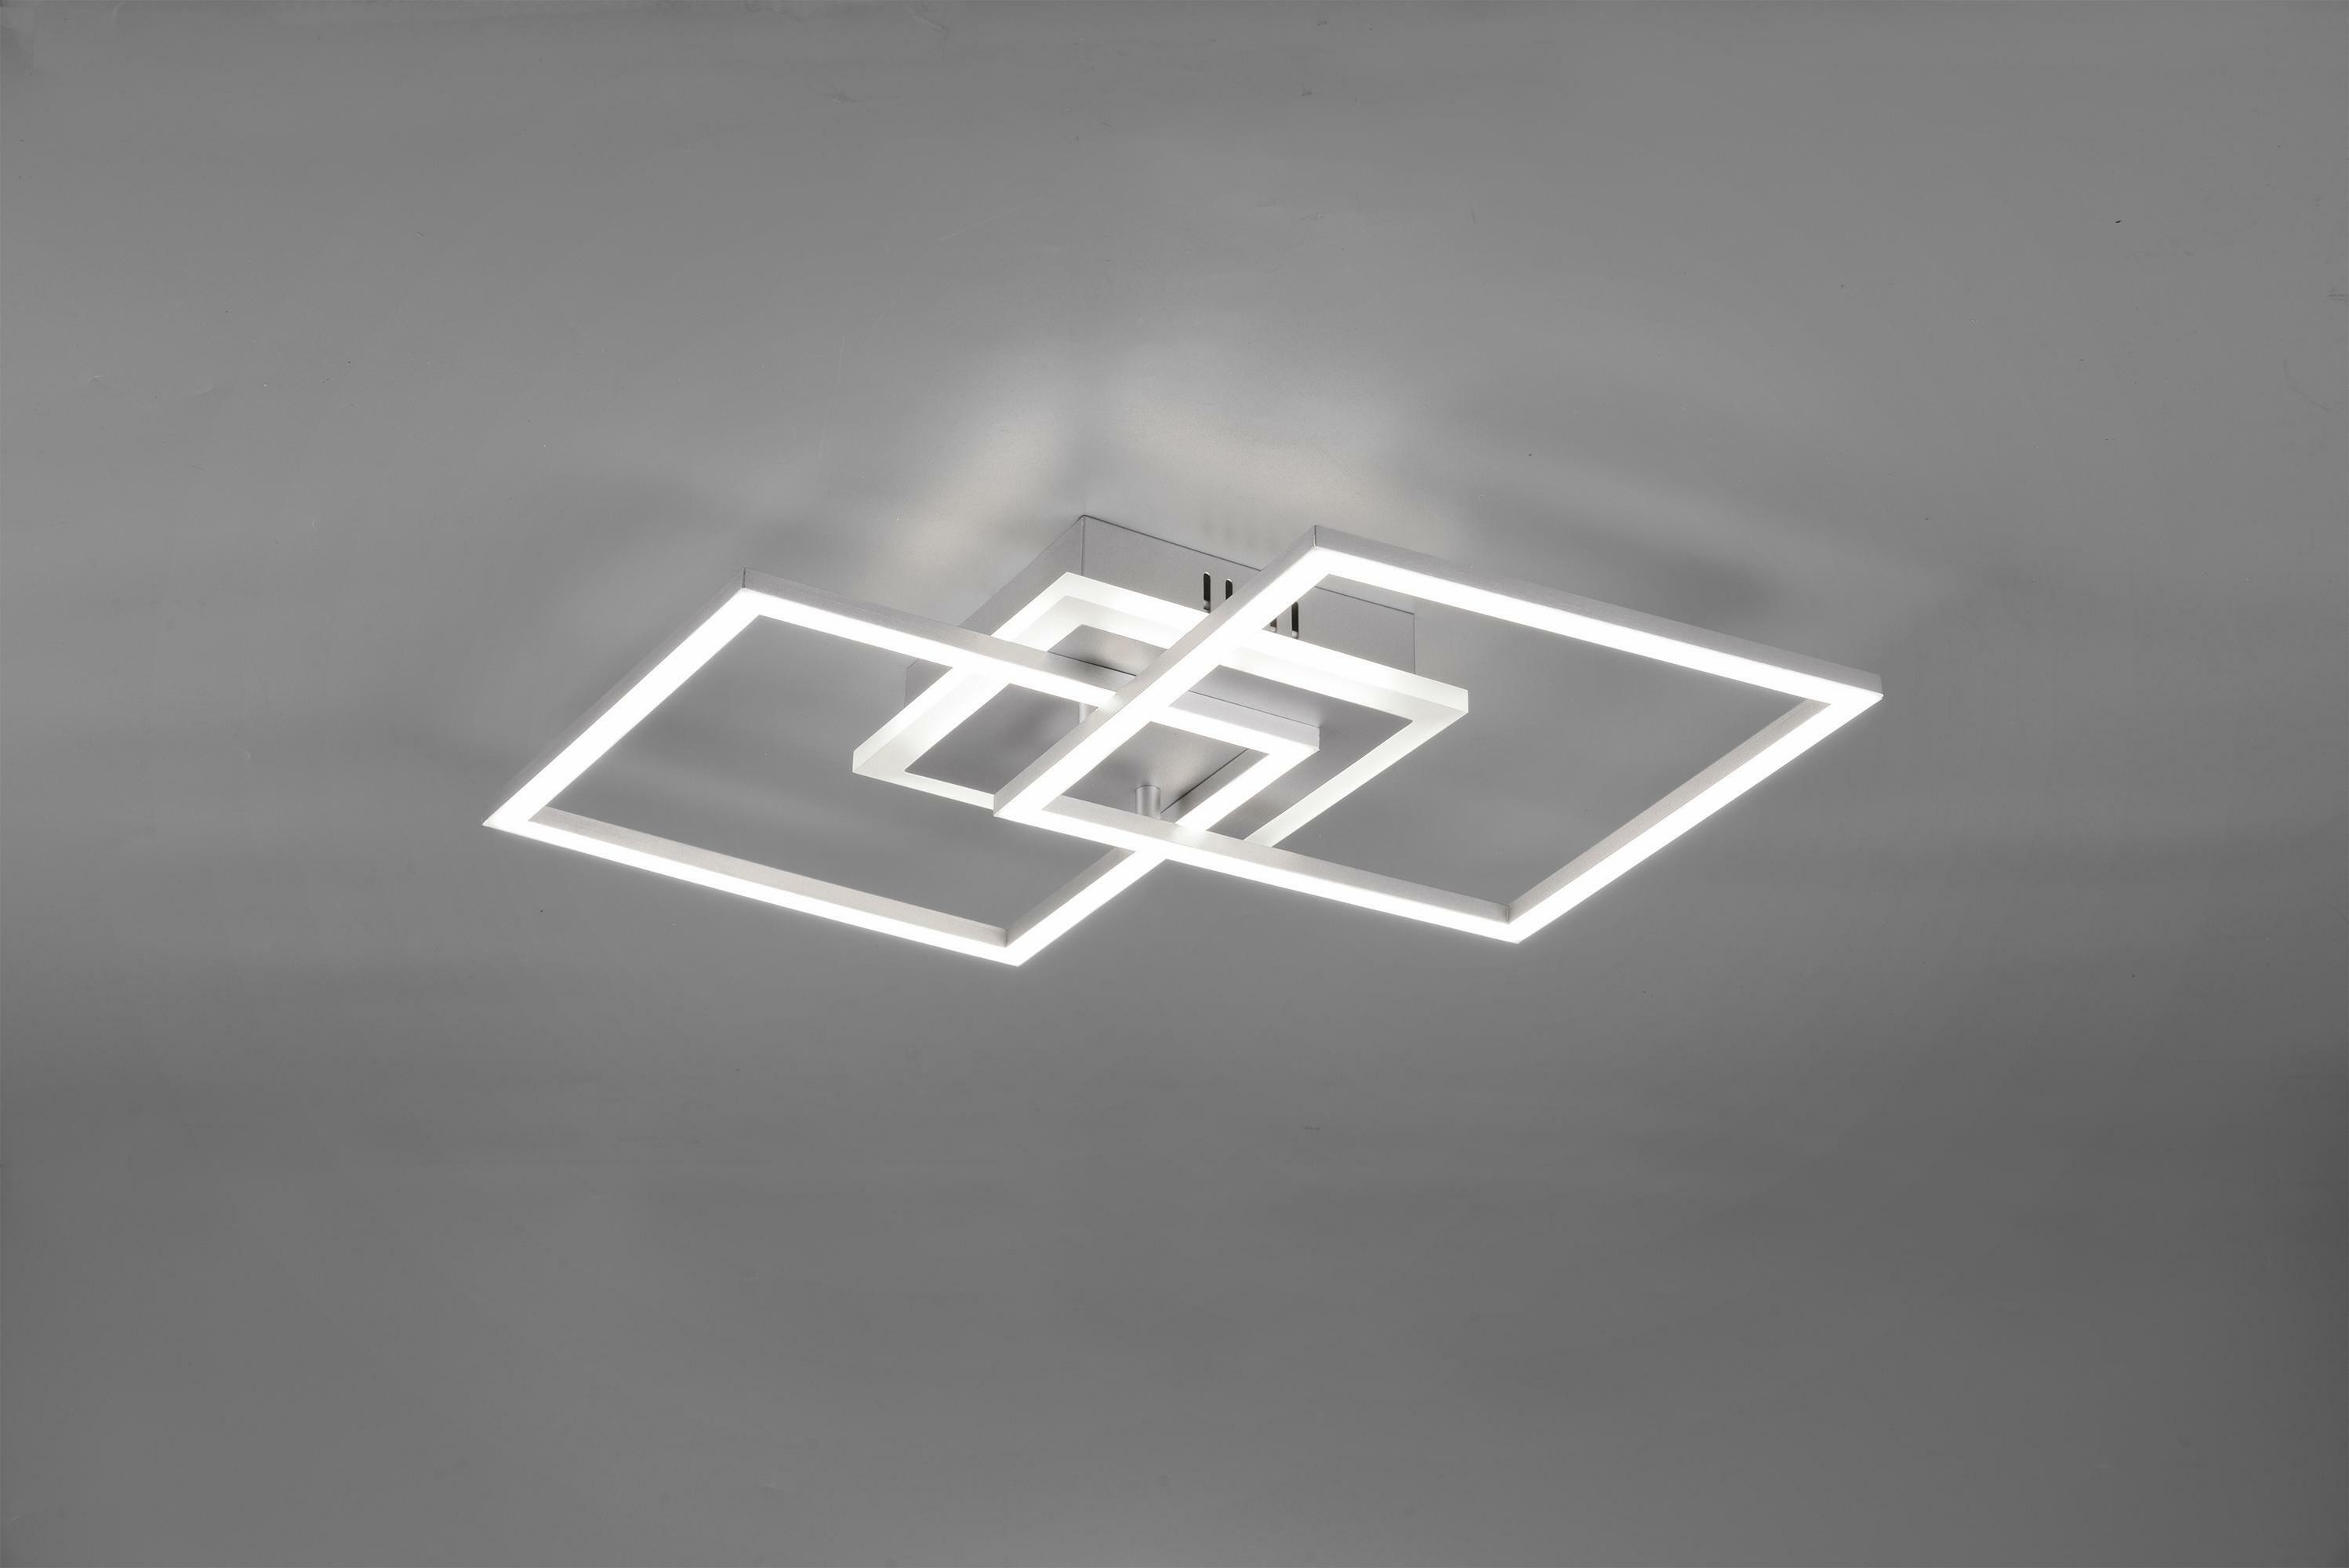 trio lighting venida plafoniera led doppio quadrato alluminio con luce centrale regolazione intensita' interruttore l.58cm r62793187